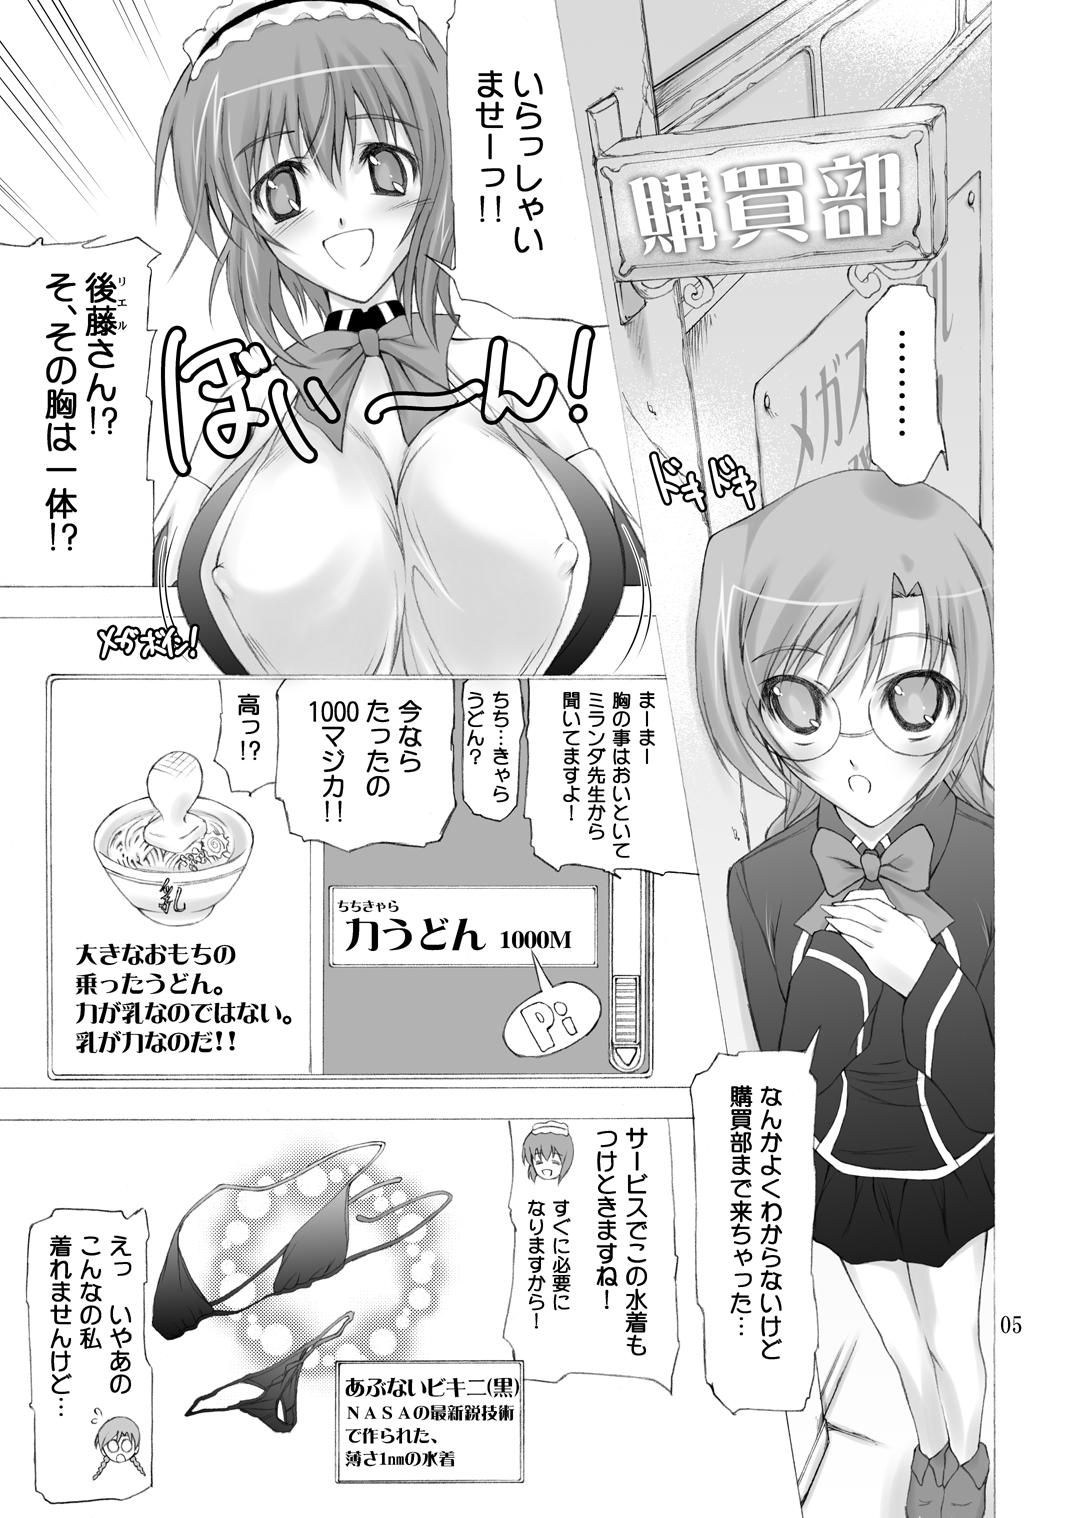 Sexo Quiz Chikara Udon Hajimemashita! - Quiz magic academy Old Young - Page 4